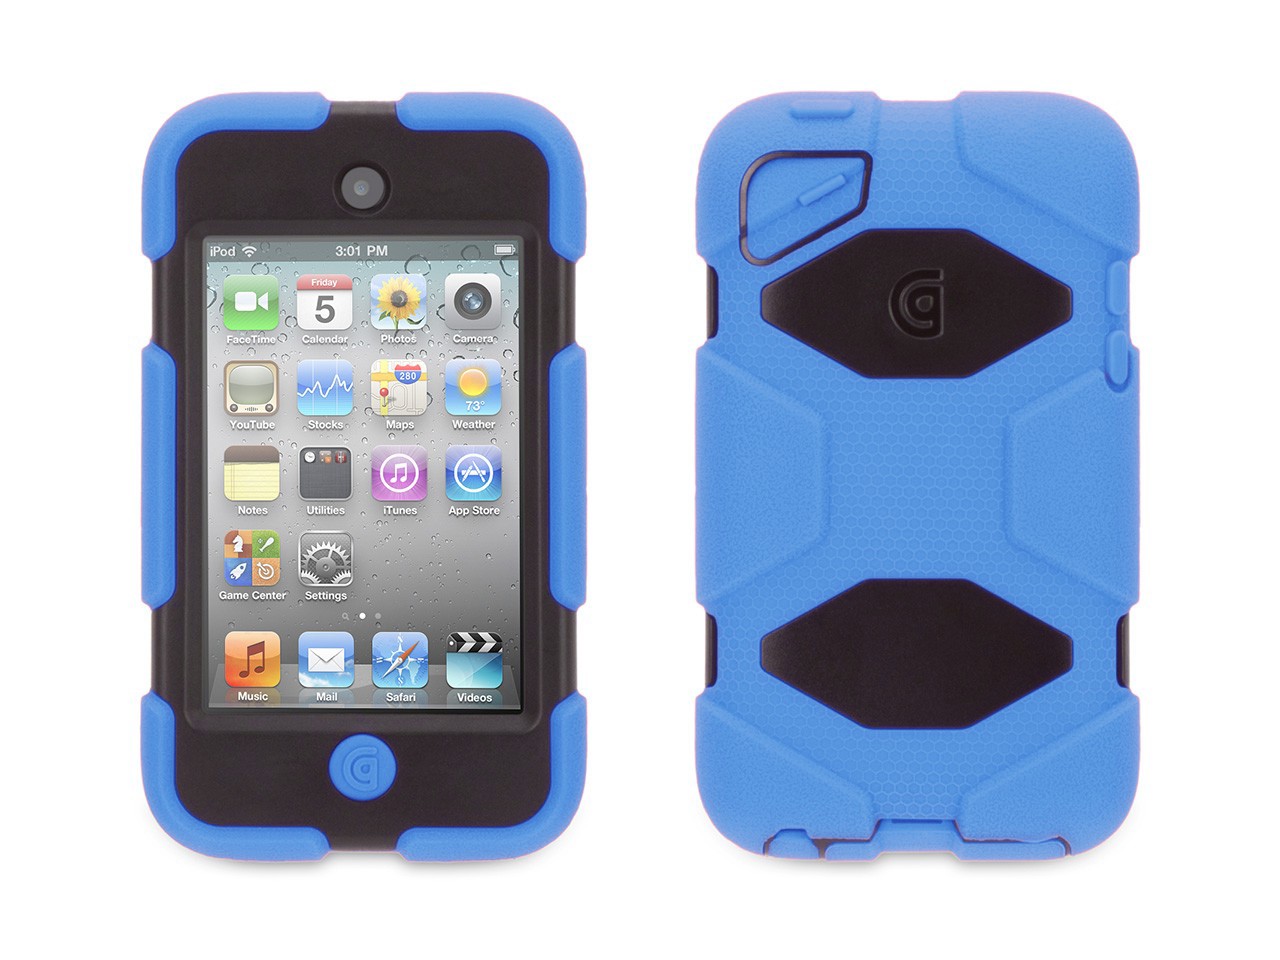 Griffin FlexGrip Wrap Case for iPod Touch 4G Black